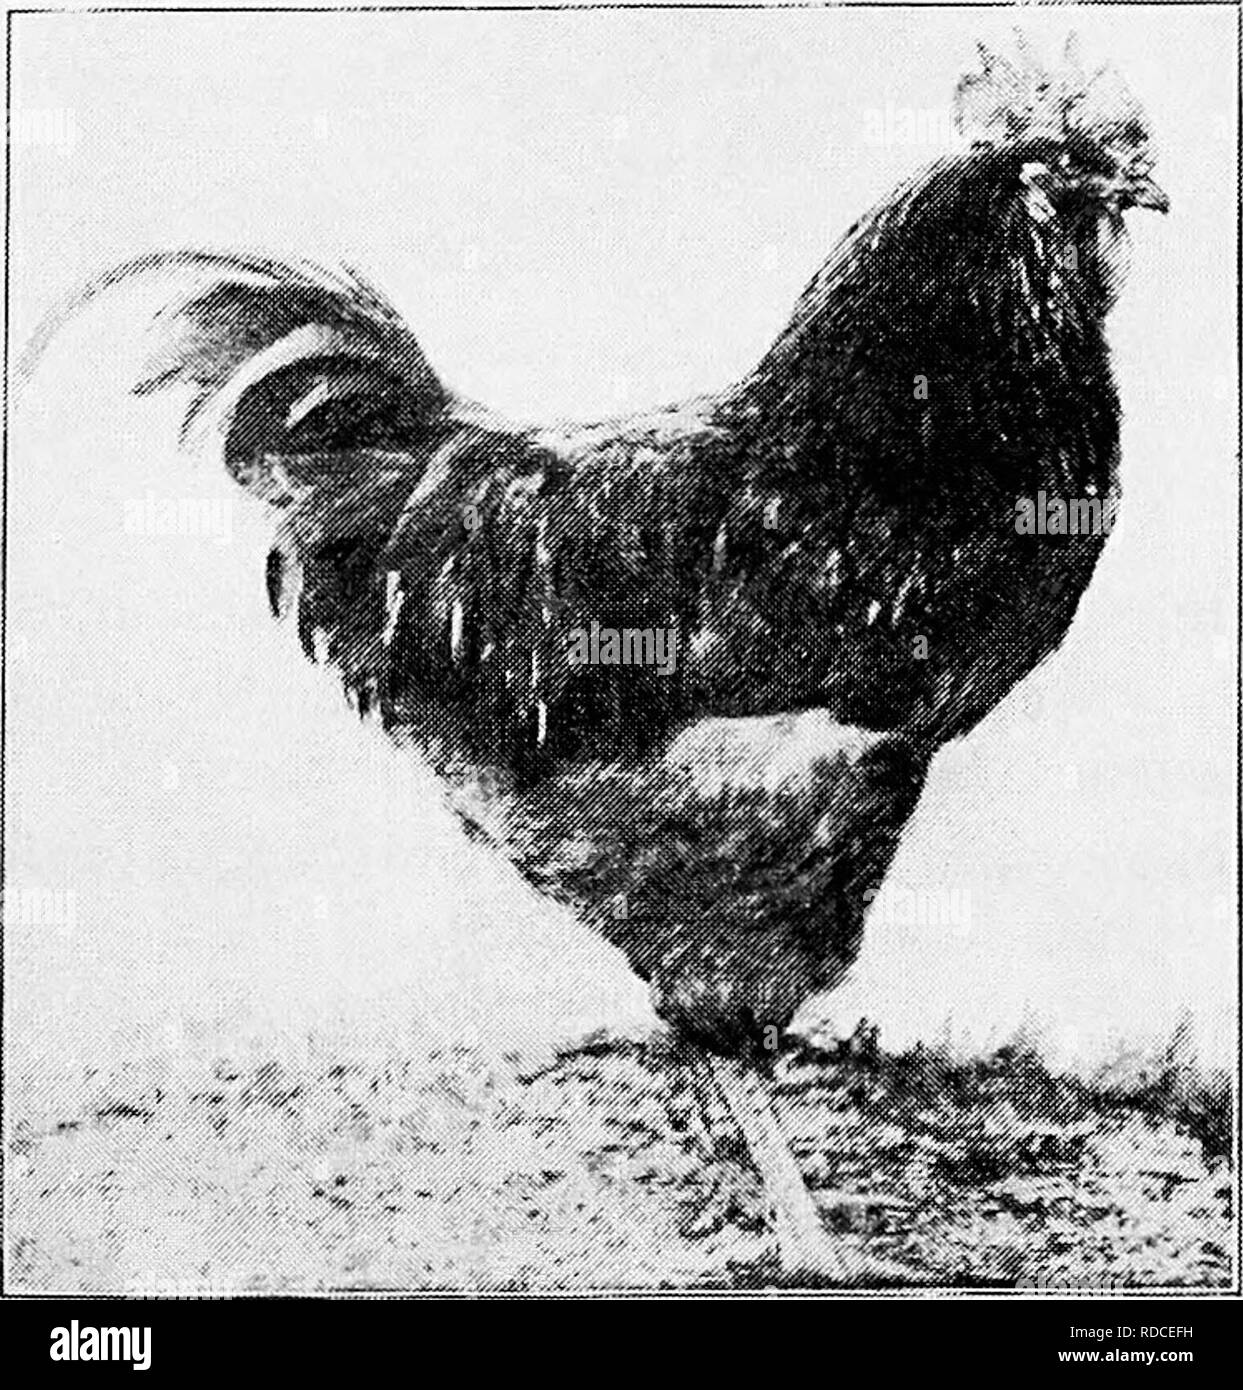 Principios y práctica de la cultura de aves de corral . Las aves de corral.  Fig. 400. Buff Plymouth Rock gallina (Fotografía del propietario, J. A.  Ashhne, en Fitchburg, Massachusetts) diferencia